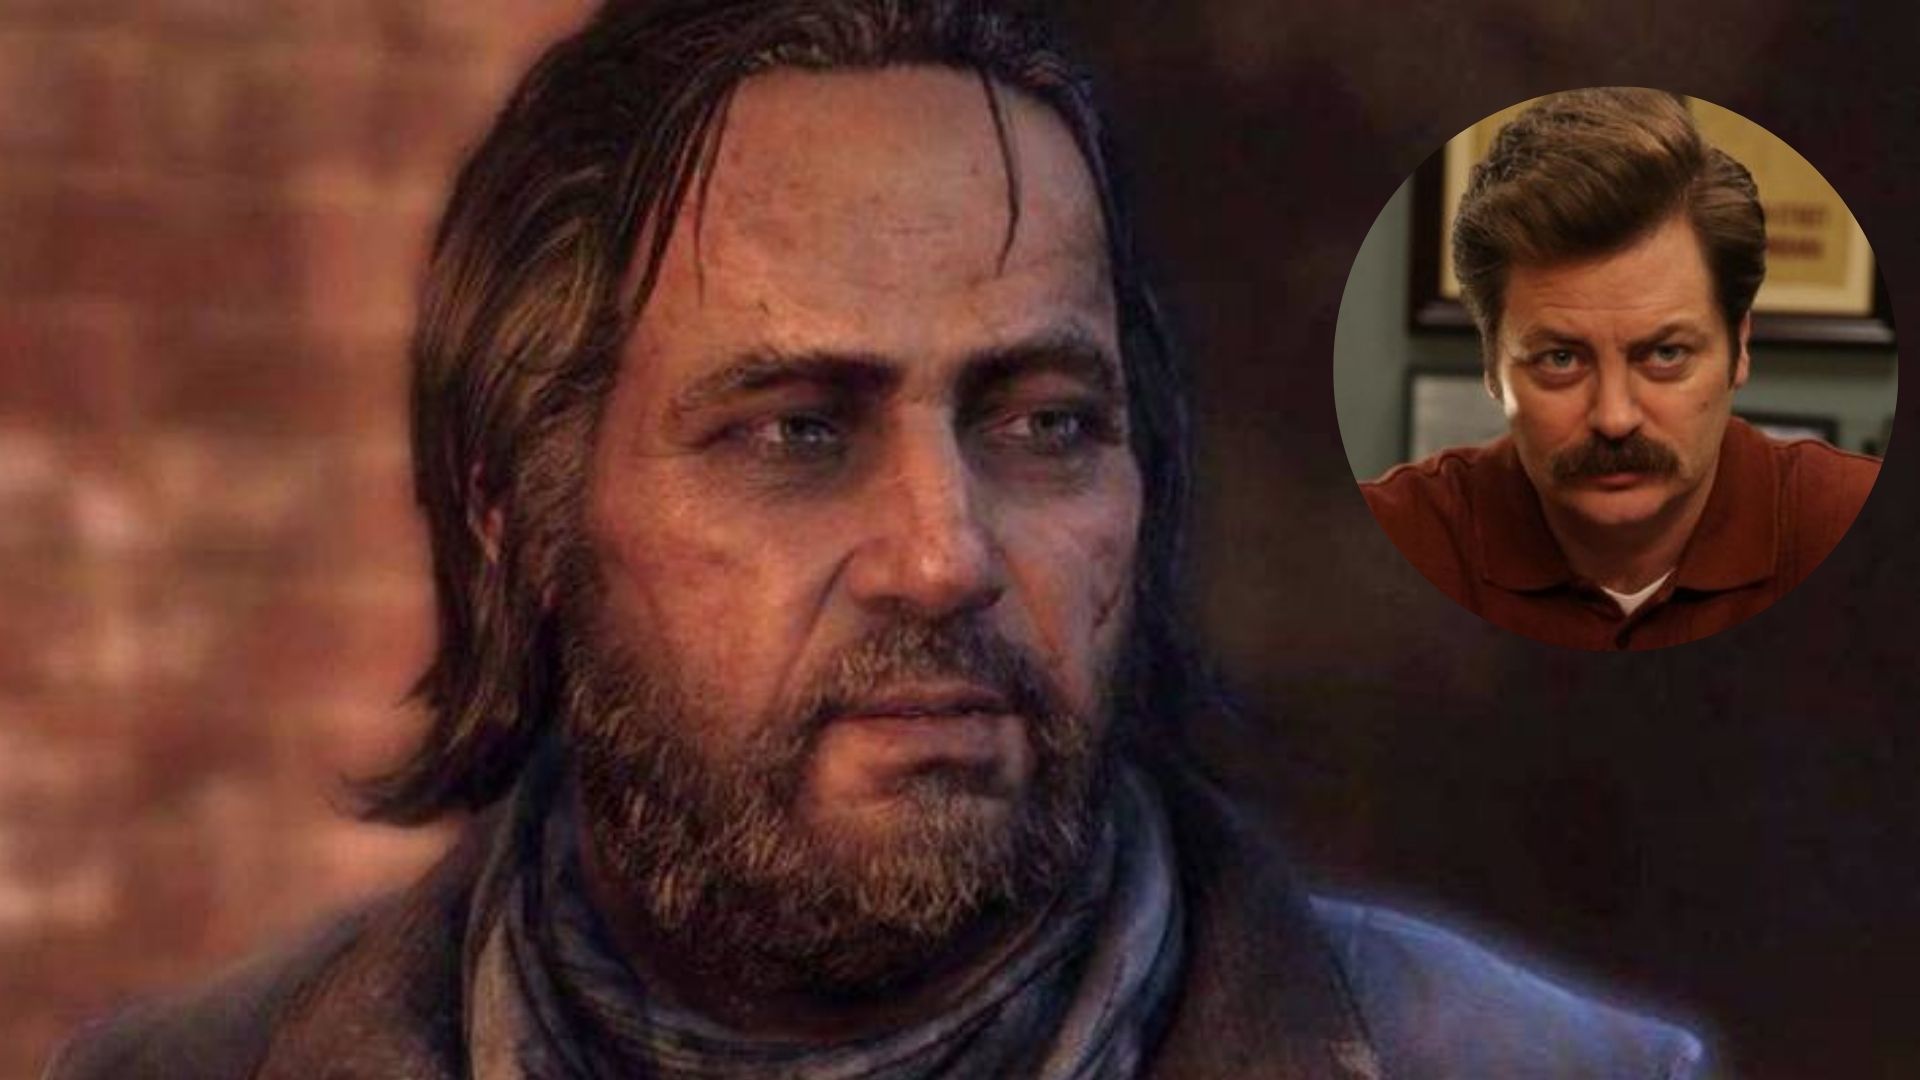 Diretor do jogo multiplayer baseado em The Last of Us confirma que